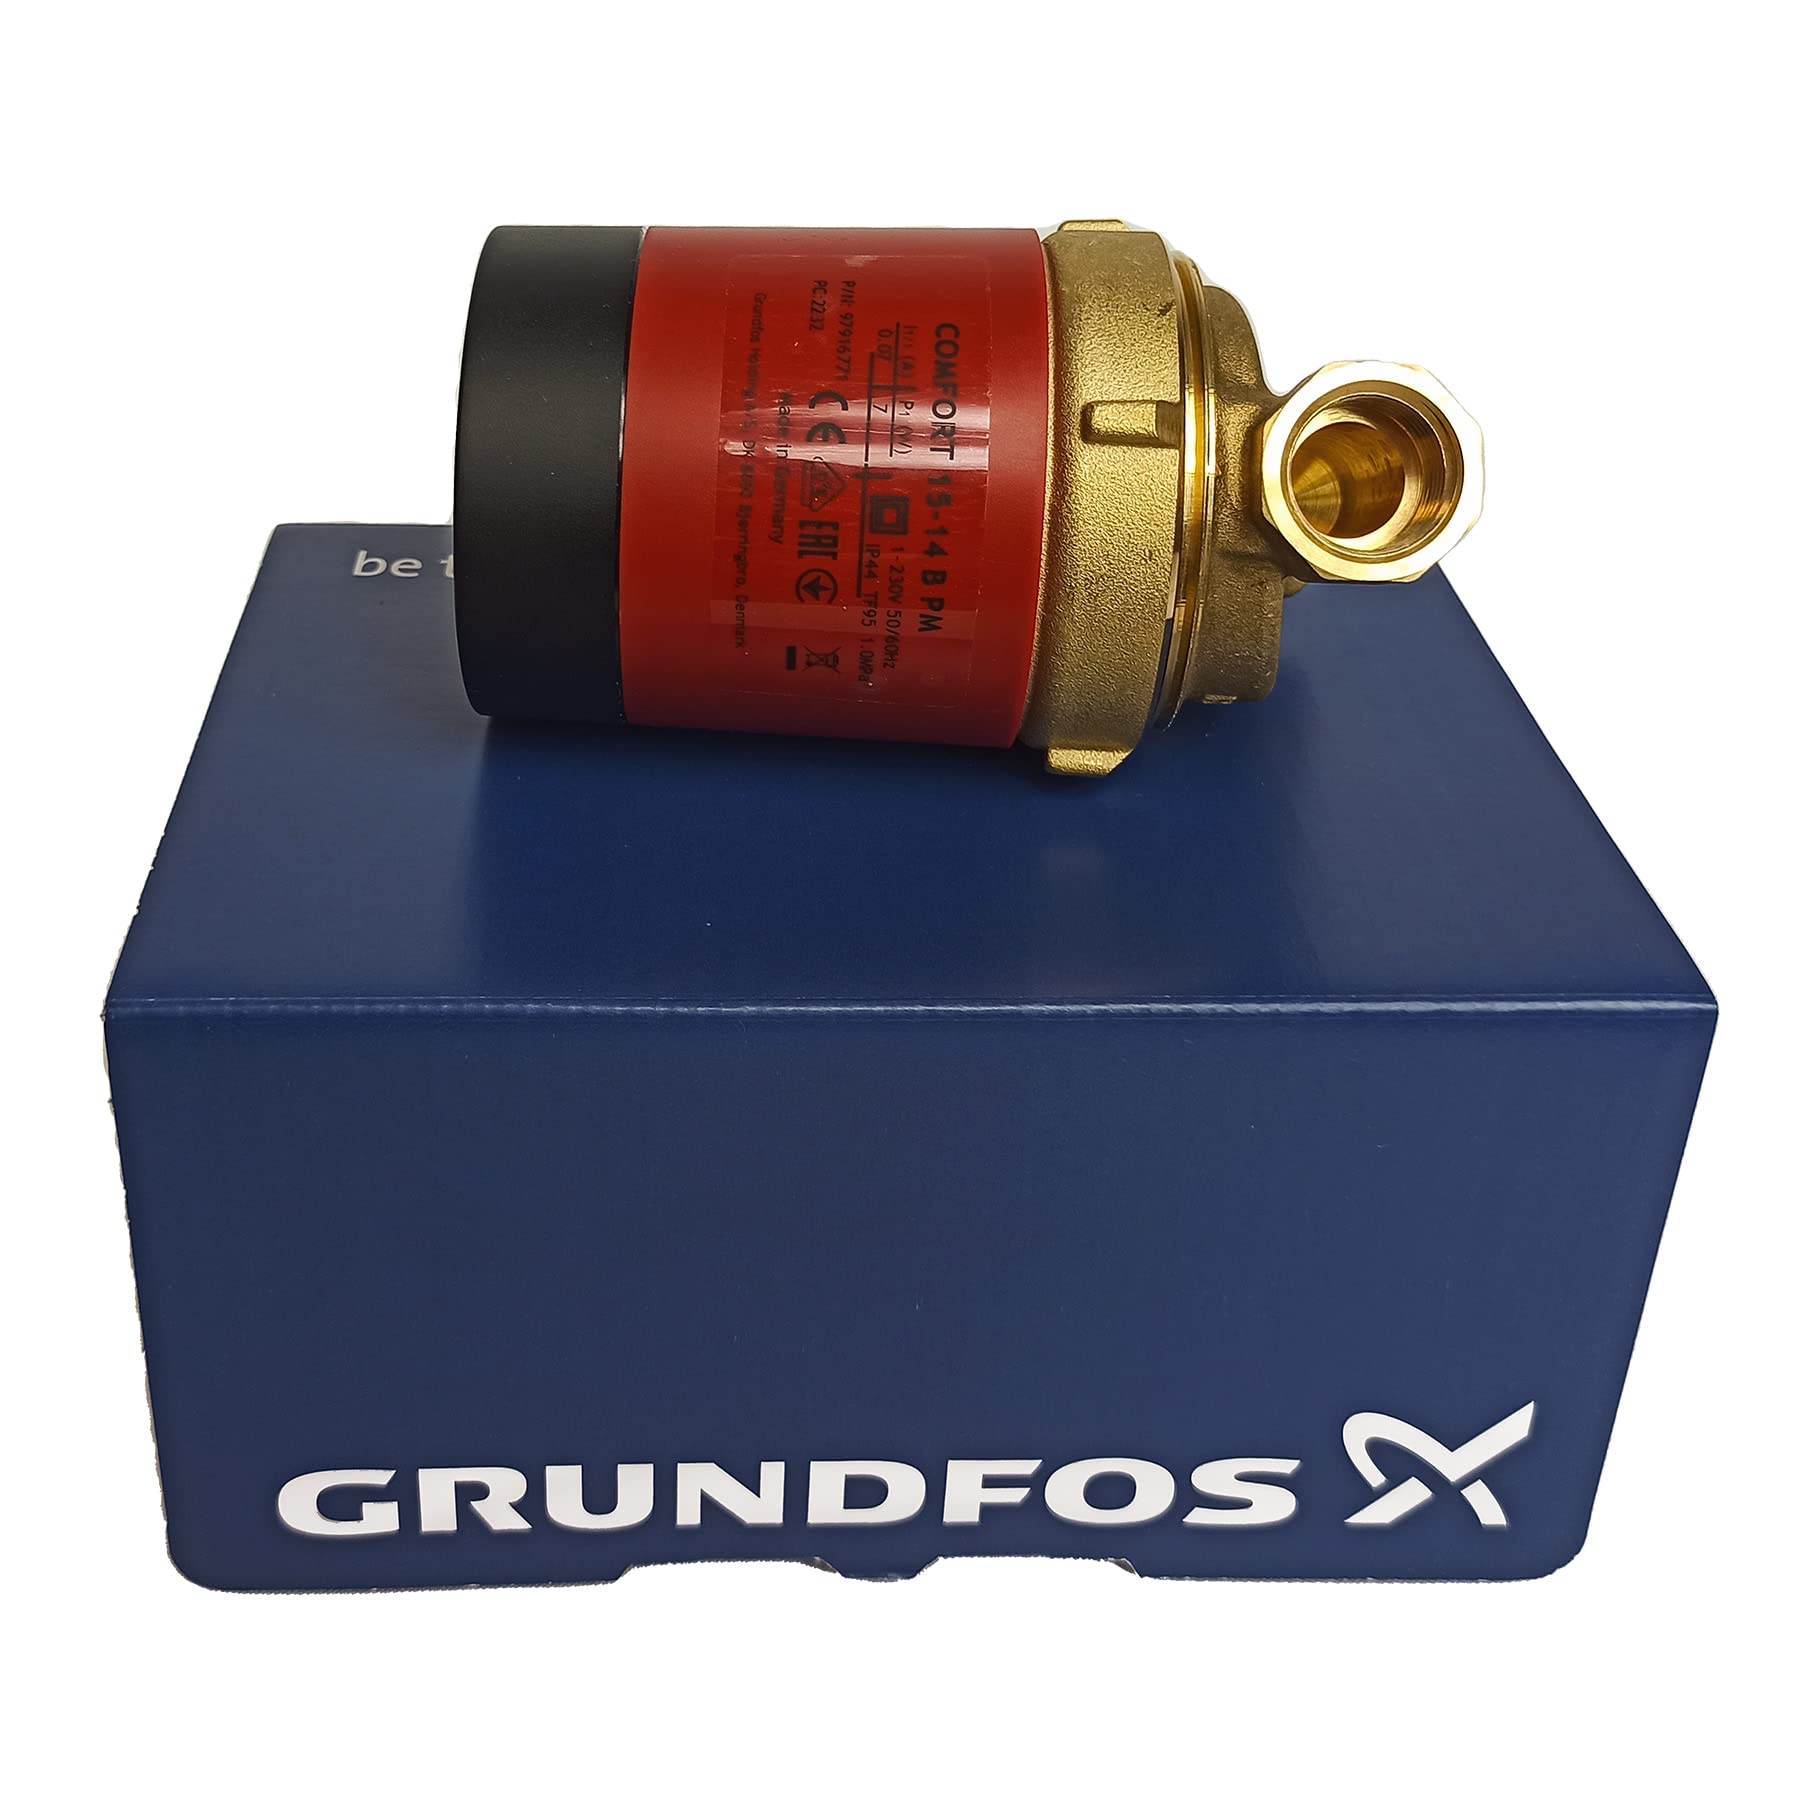 Grundfos 97916771 UP 15-14 B PM 80mm hocheffiziente Zirkulationspumpe/Trinkwasserpumpe, 8 W, 230 V